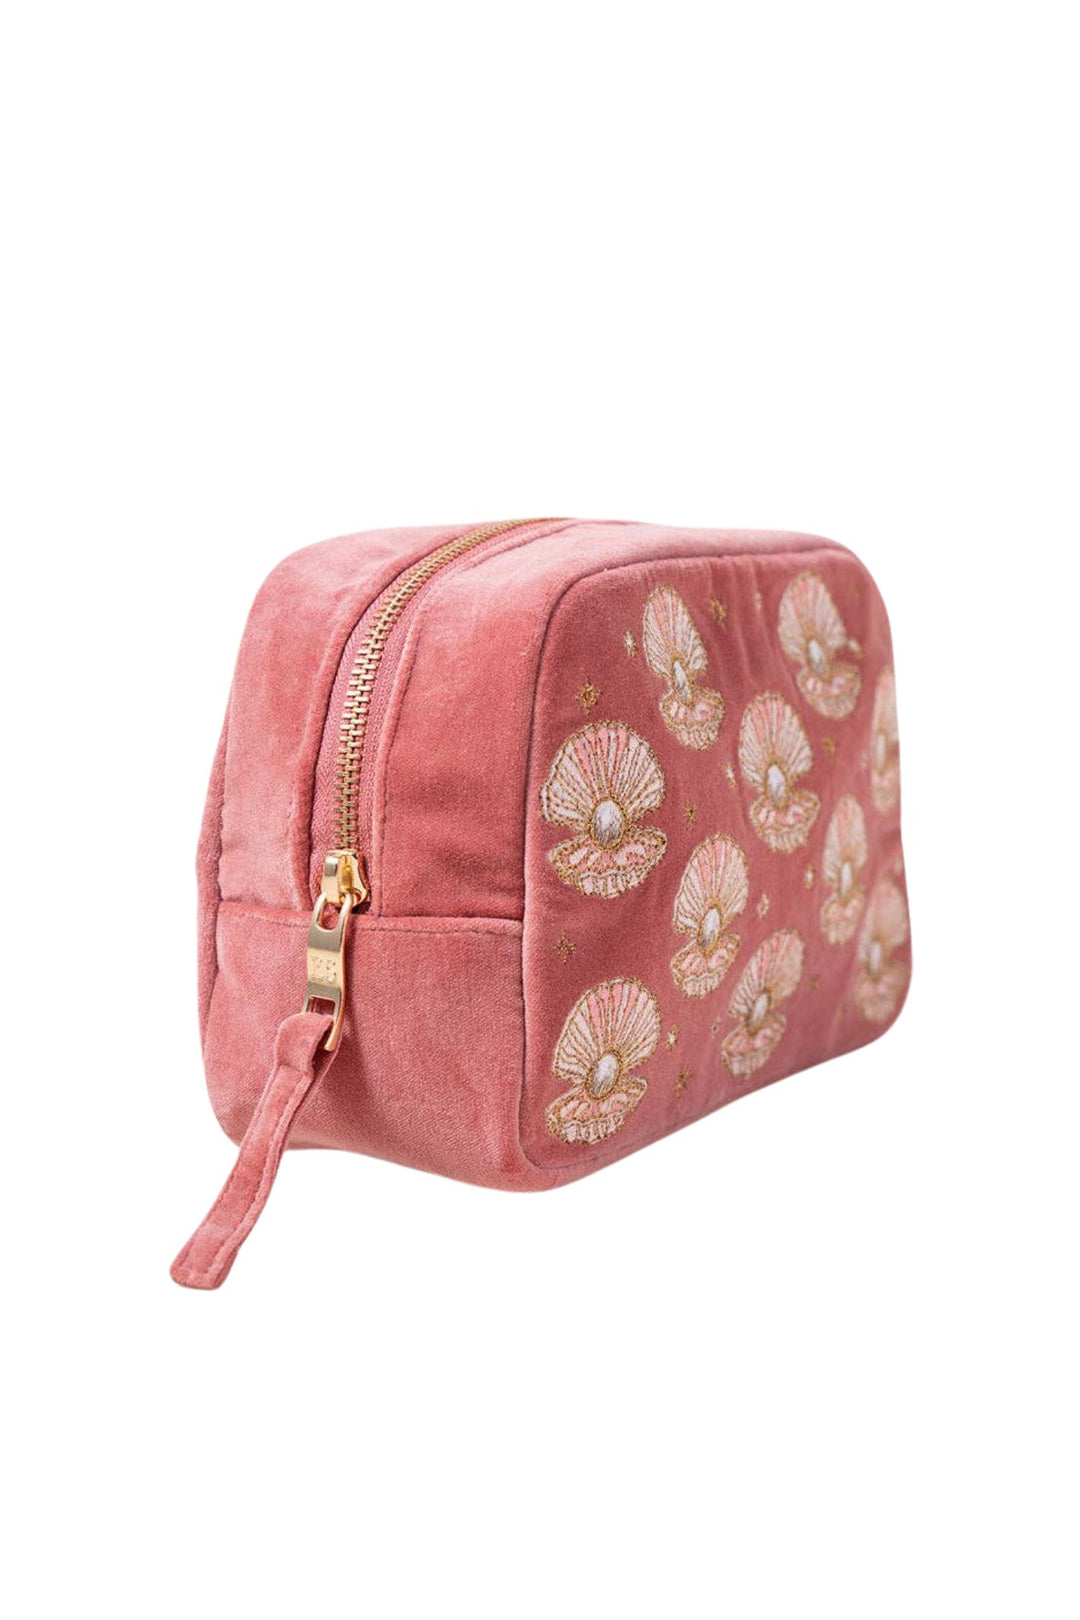 Elizabeth Scarlett Rose Pink Pearl Shell Velvet Makeup Bag